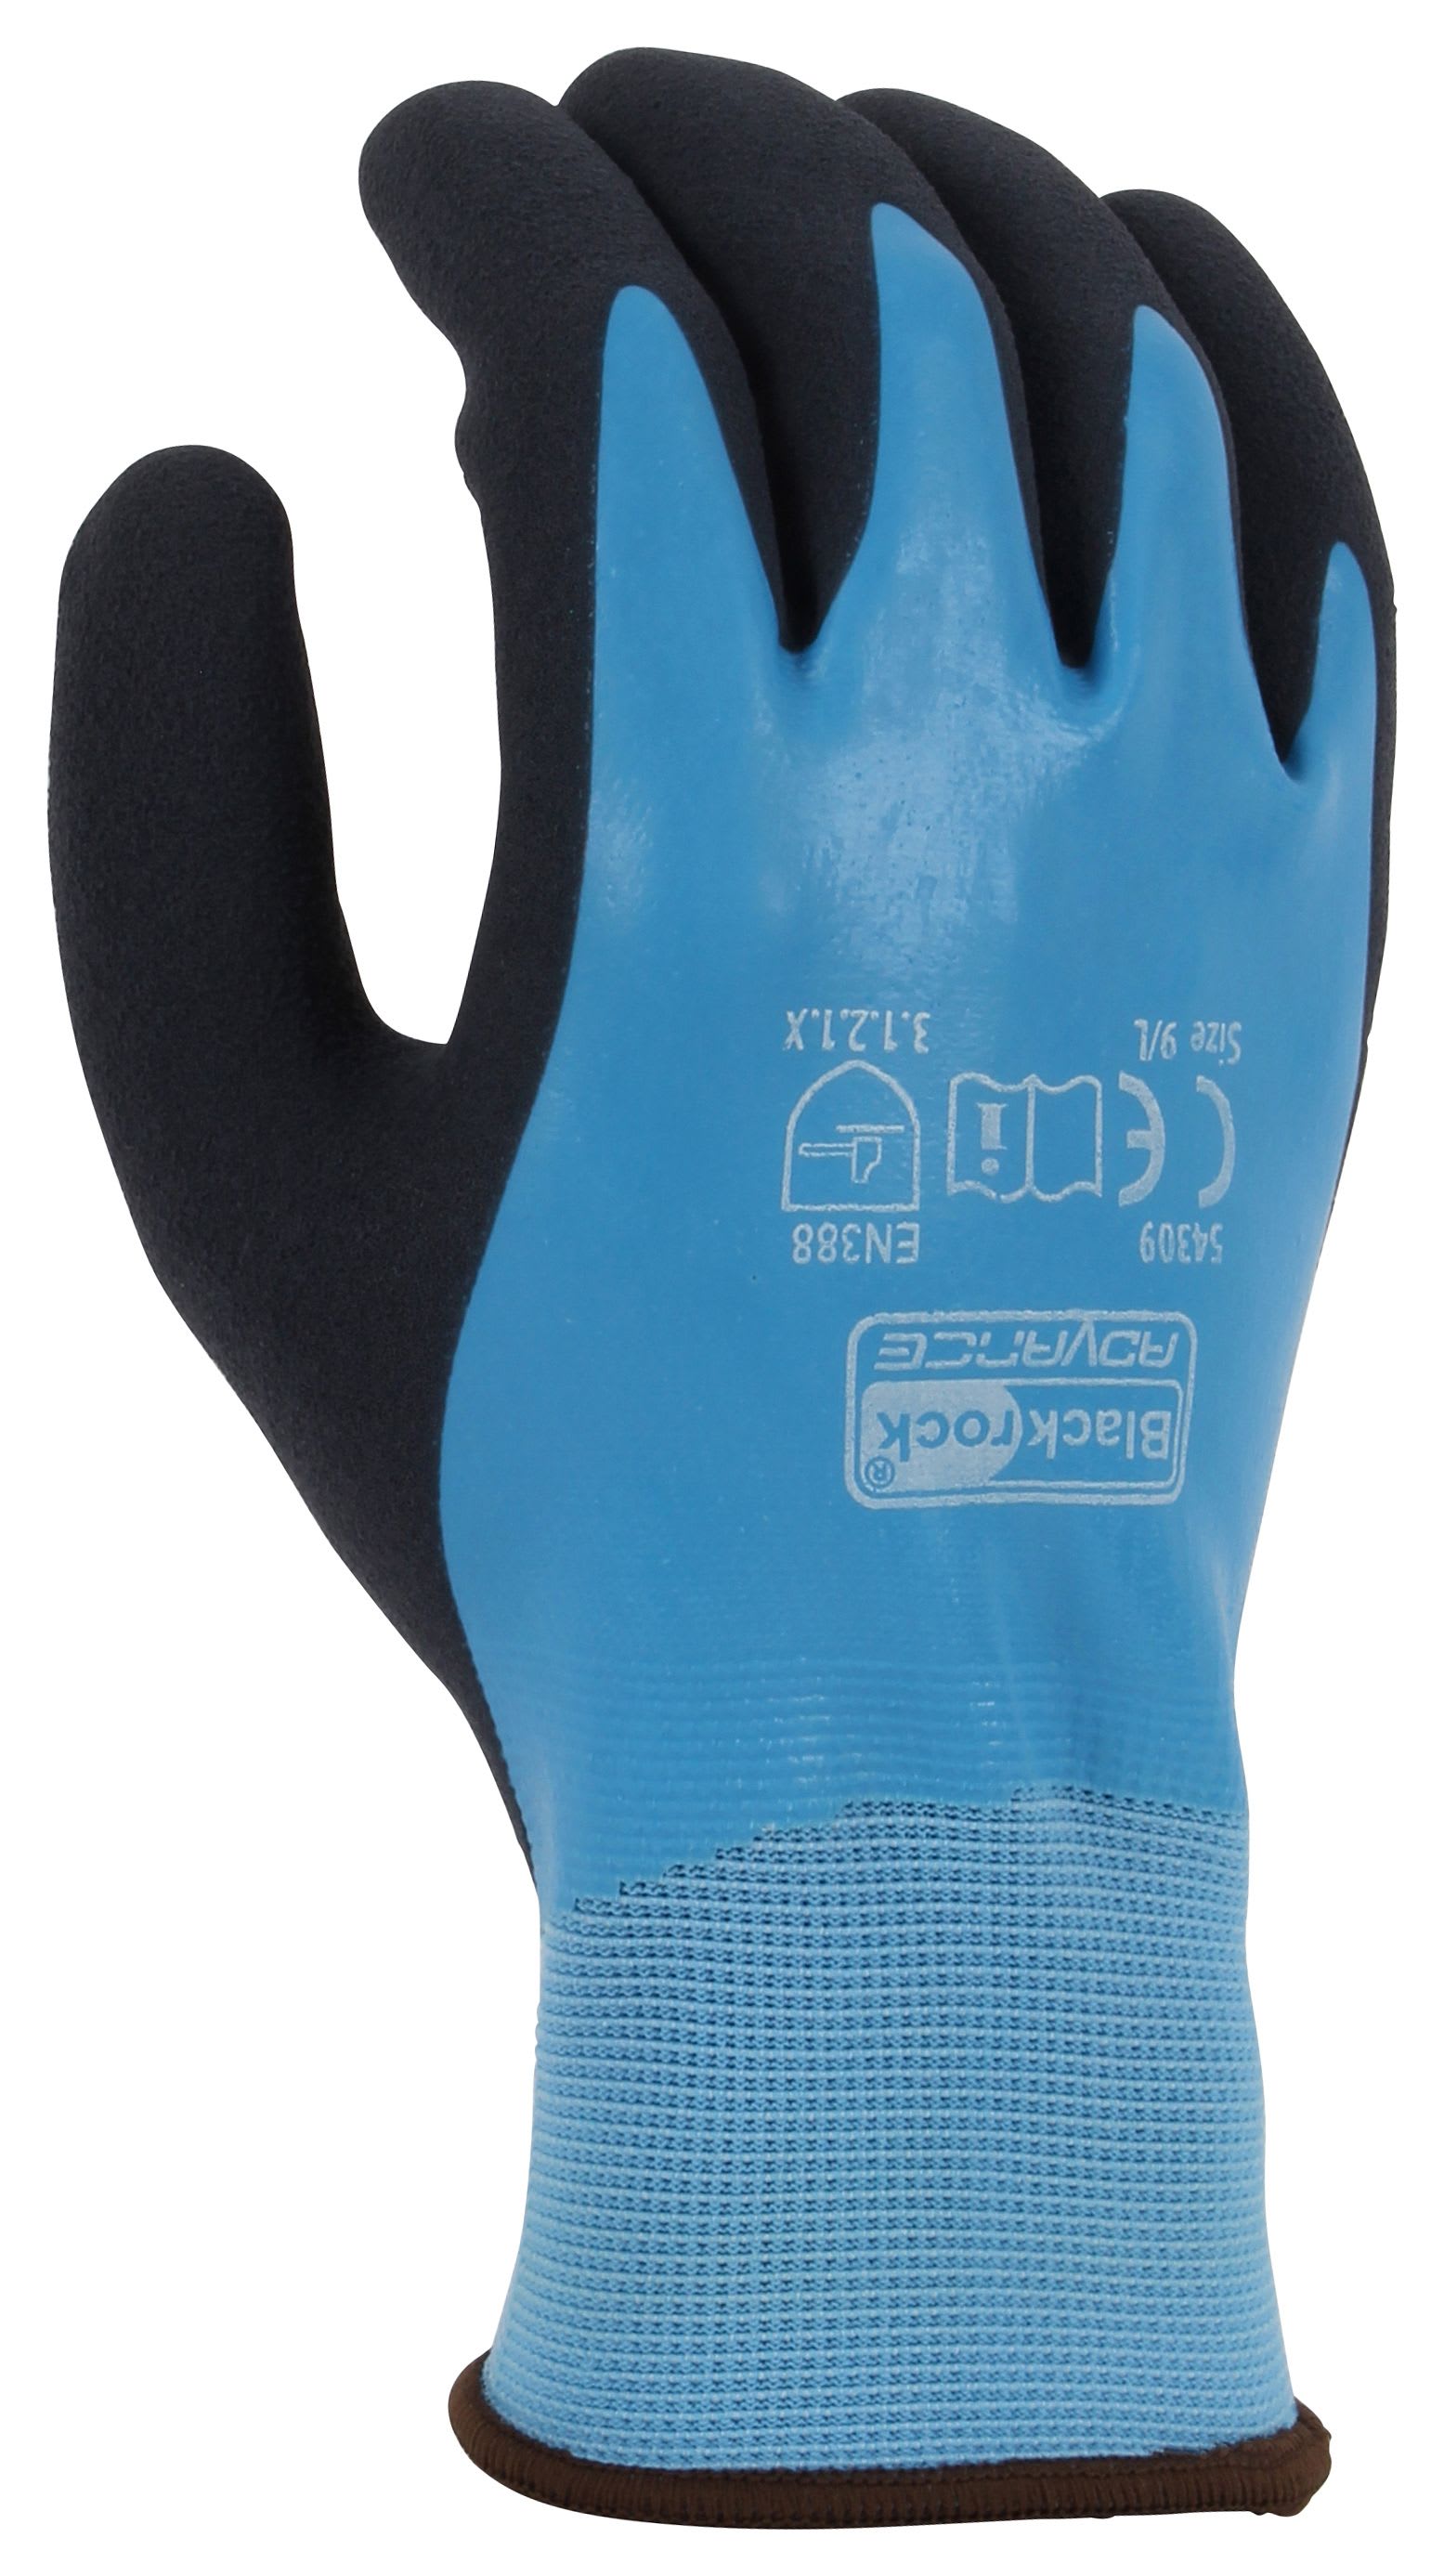 Blackrock Watertite Waterproof Blue Gloves - Size L/9